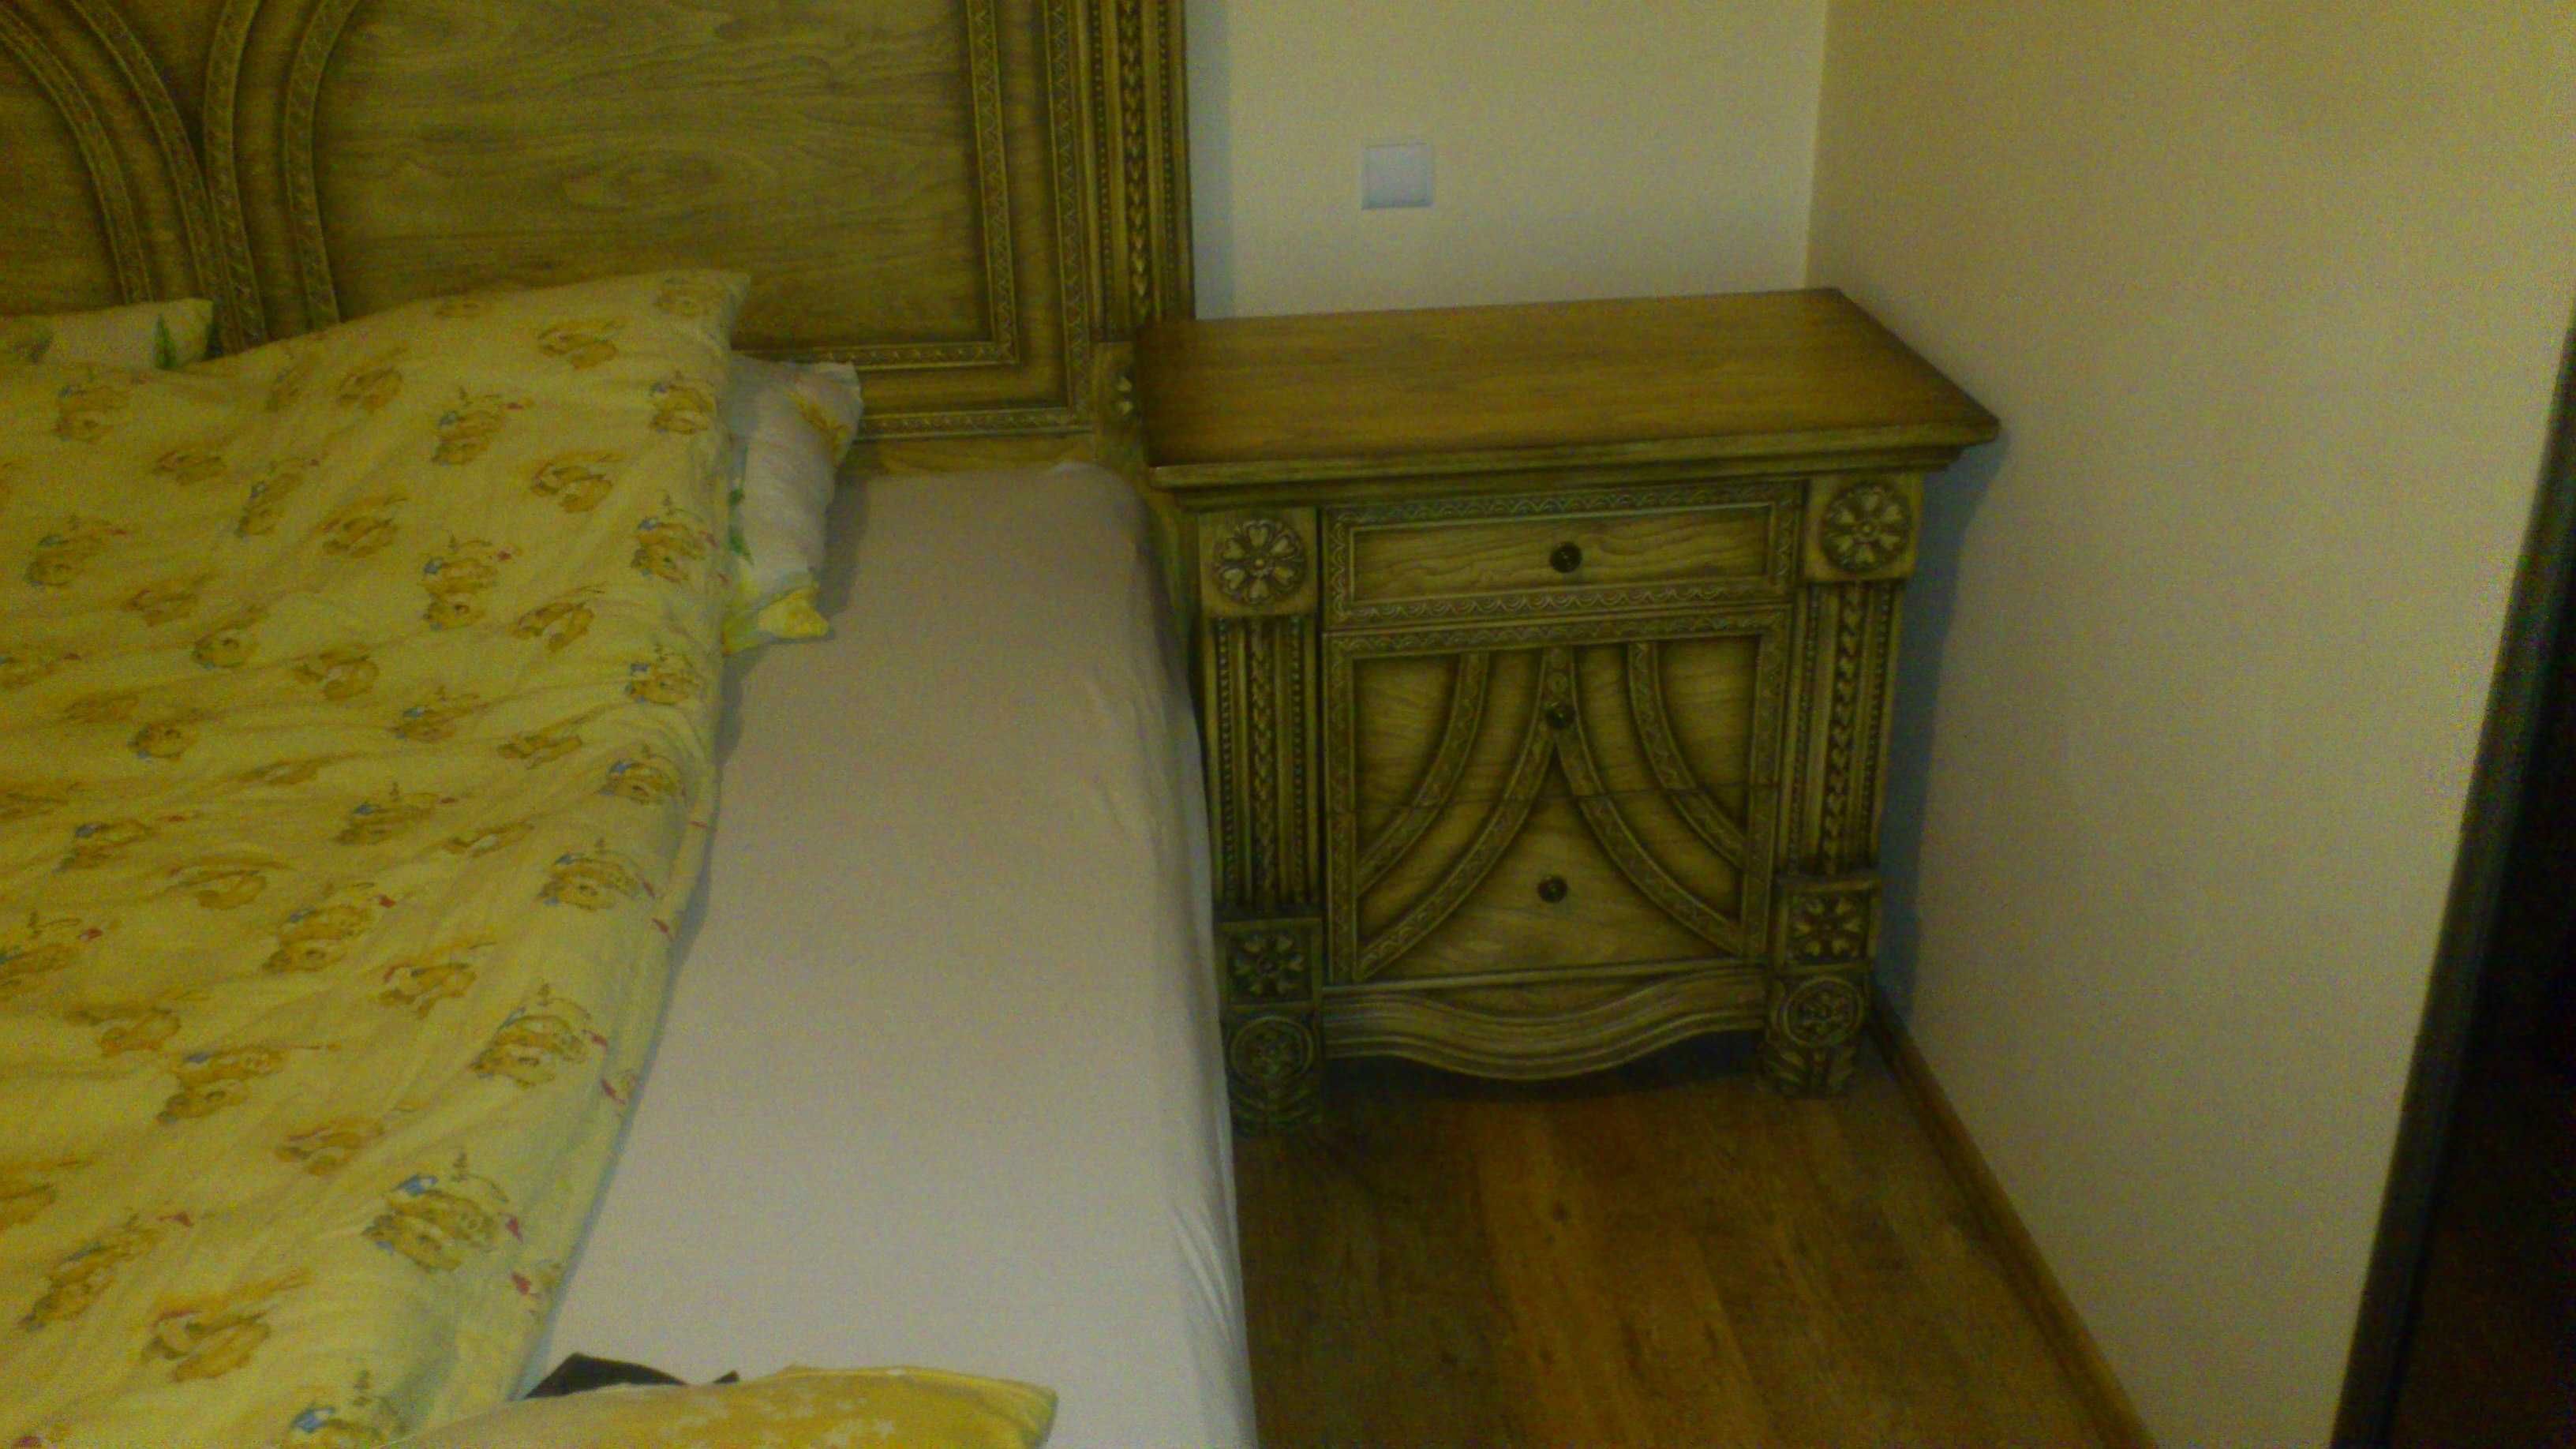 Łoże łóżko szafa komoda 2x2m USA władca pierścieni duże